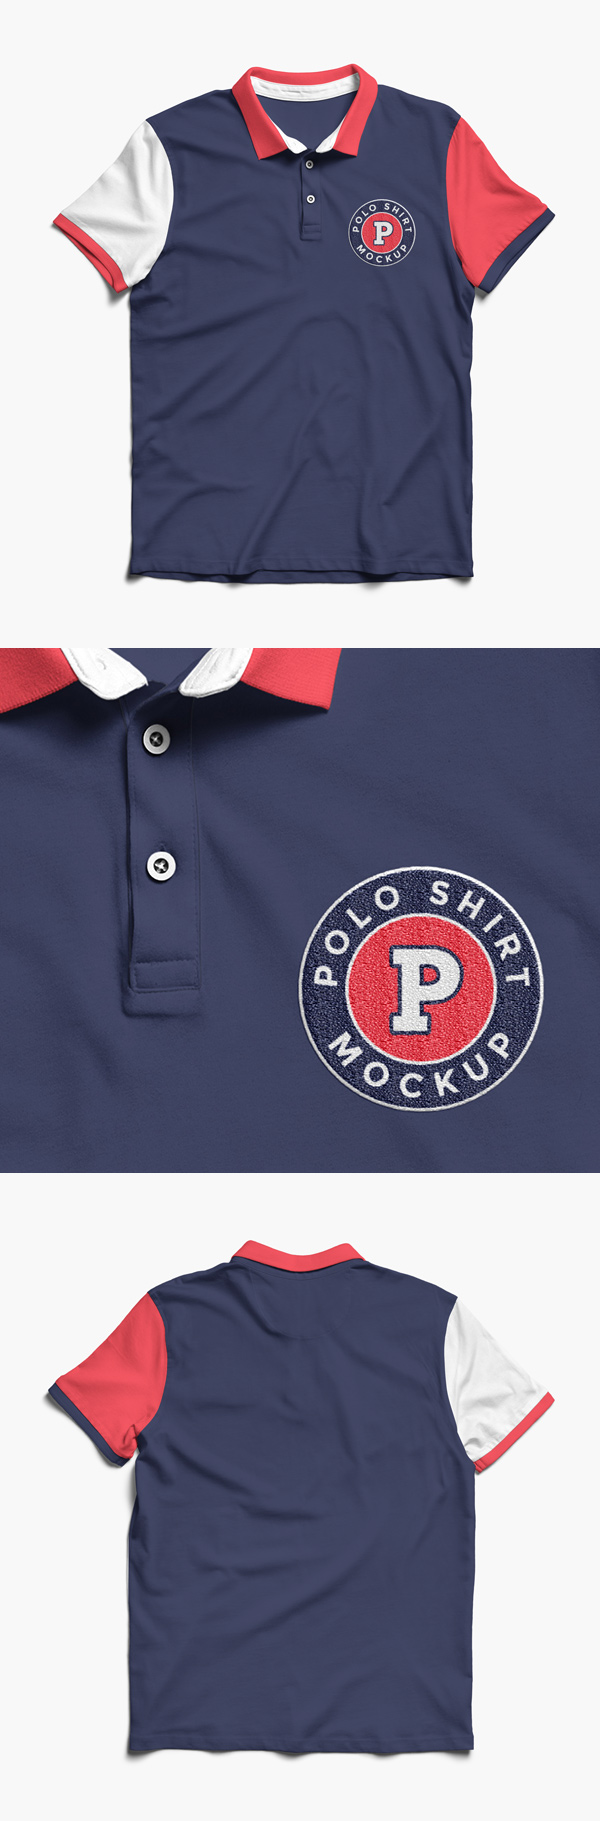 Download Polo Shirt MockUp PSD Template - LTHEME